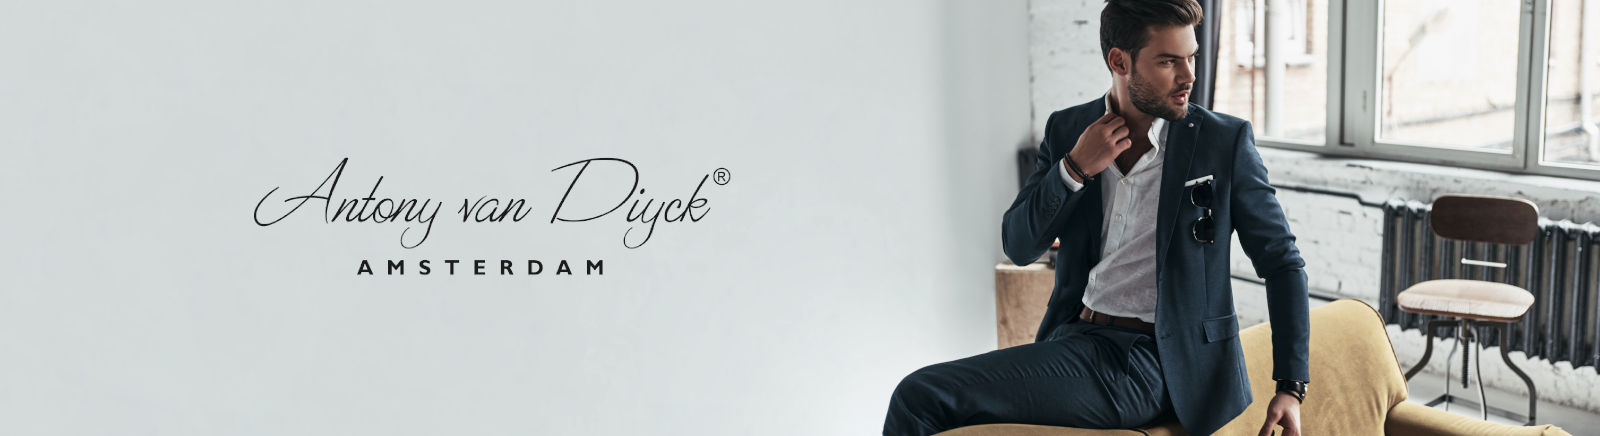 Antony van Diyck Stiefeletten für Damen im Online-Shop von GISY kaufen